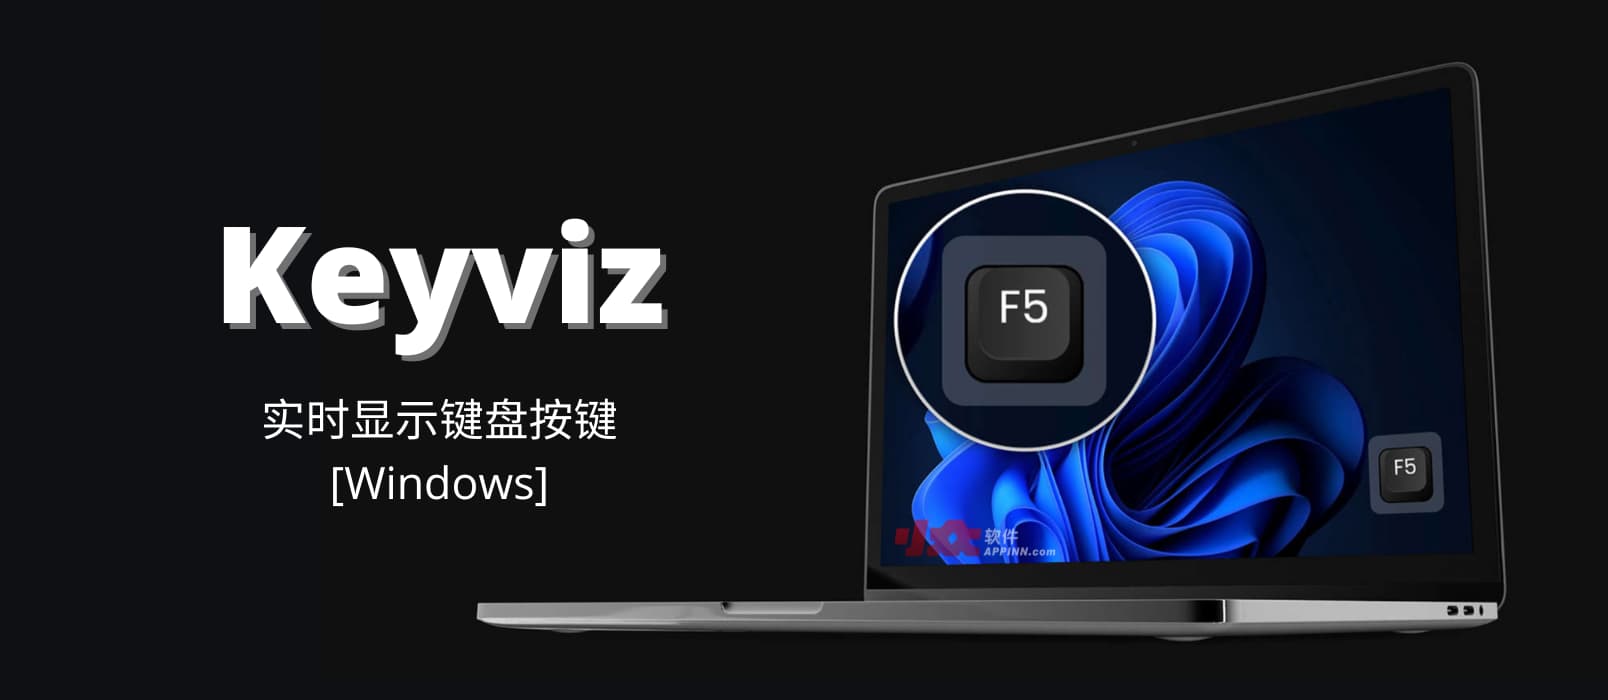 Keyviz - 开源按键可视化工具：实时显示键盘按键[Windows]